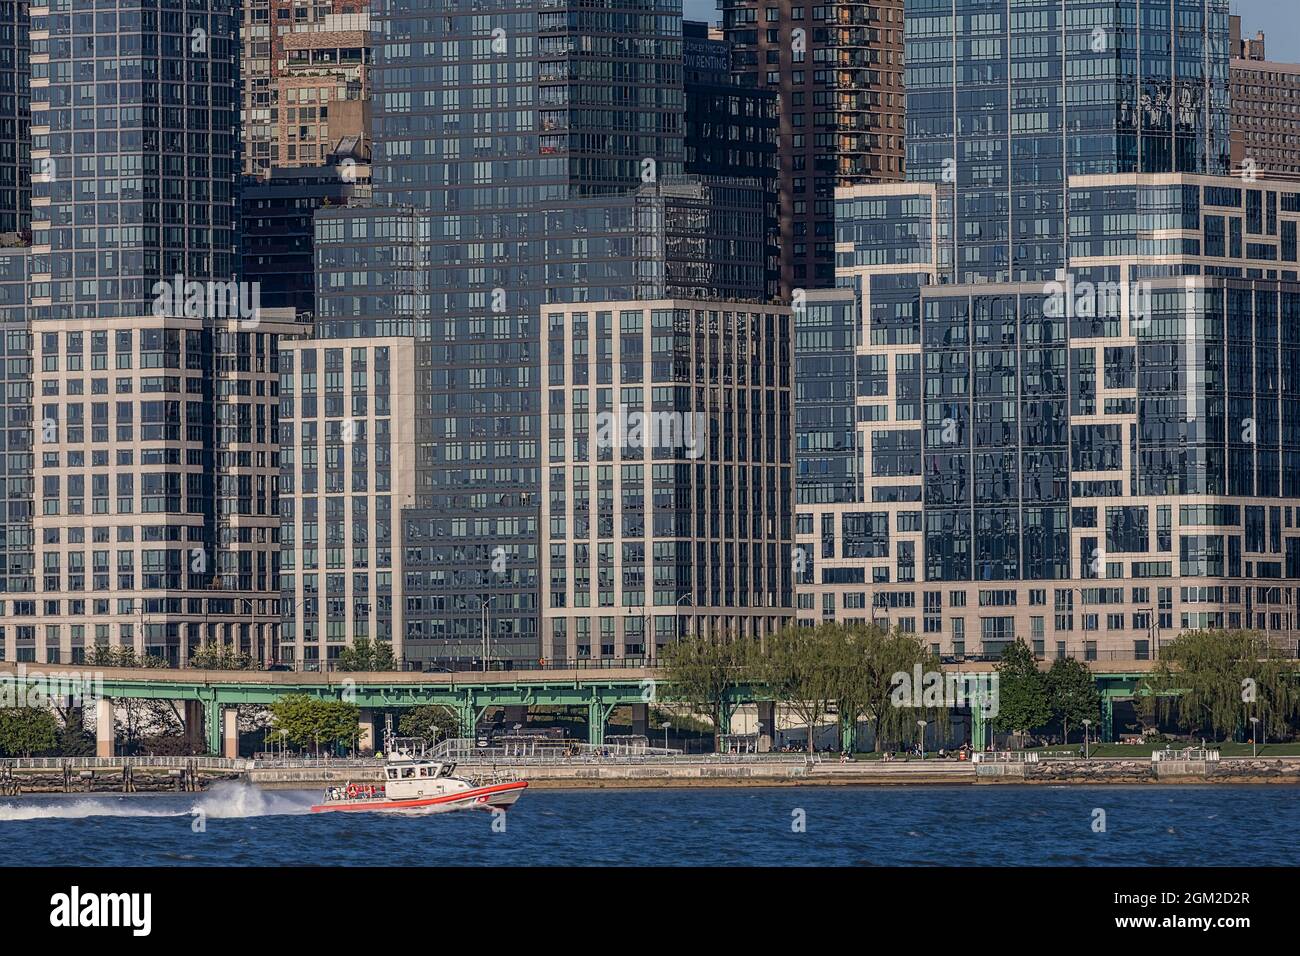 US Coast Guard NYC - una nave della Guardia Costiera degli Stati Uniti naviga lungo lo skyline di New York City nella parte superiore di Manhattan. Visto in background sono alcuni dei Foto Stock